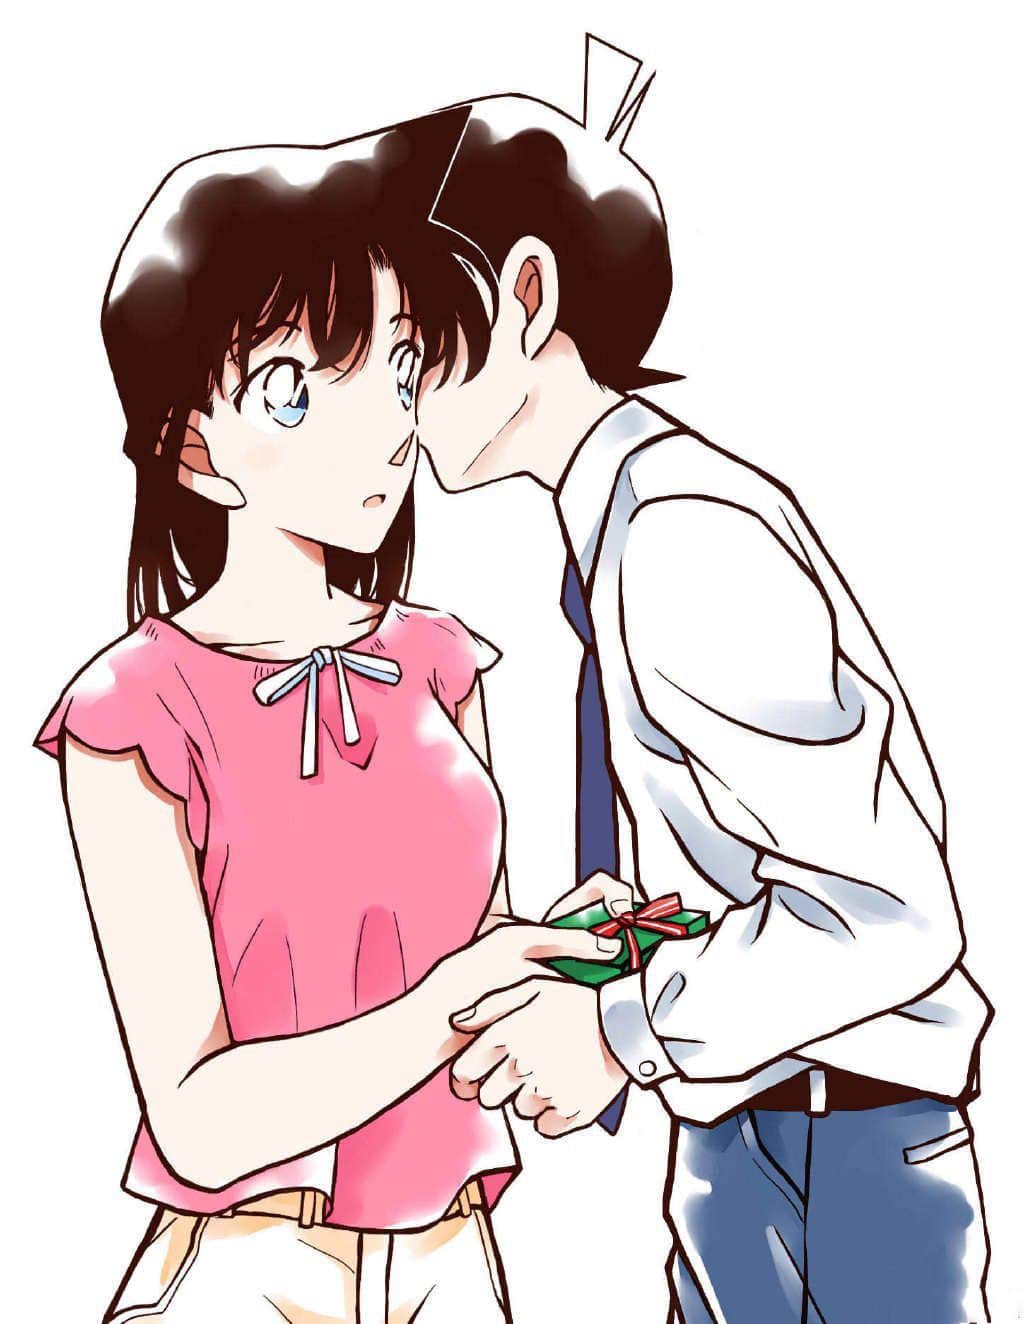 Hình Anime Shinichi và Ran hôn nhau dễ thương đáng yêu